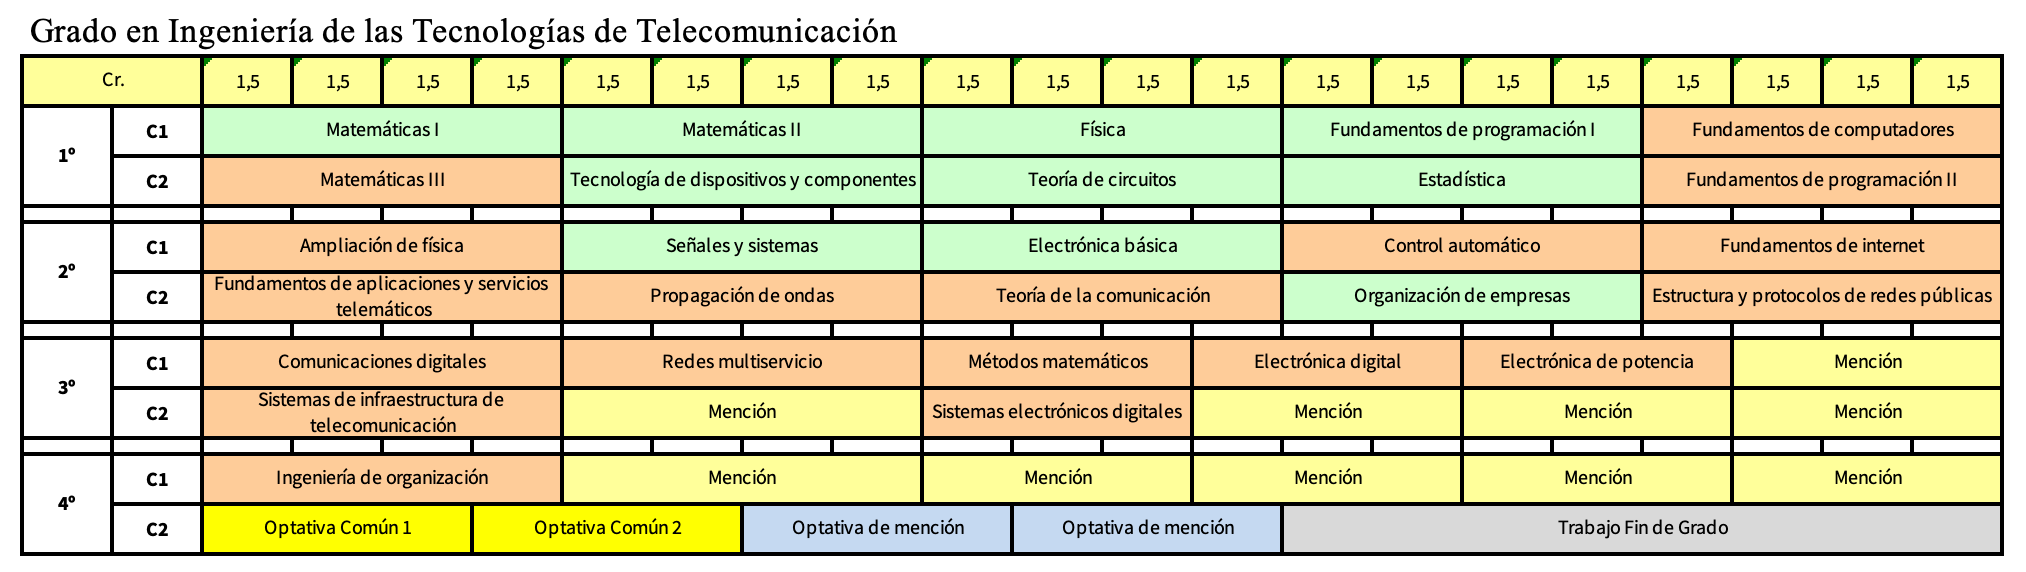 Grado en Ingeniería de las Tecnologías de la Comunicación